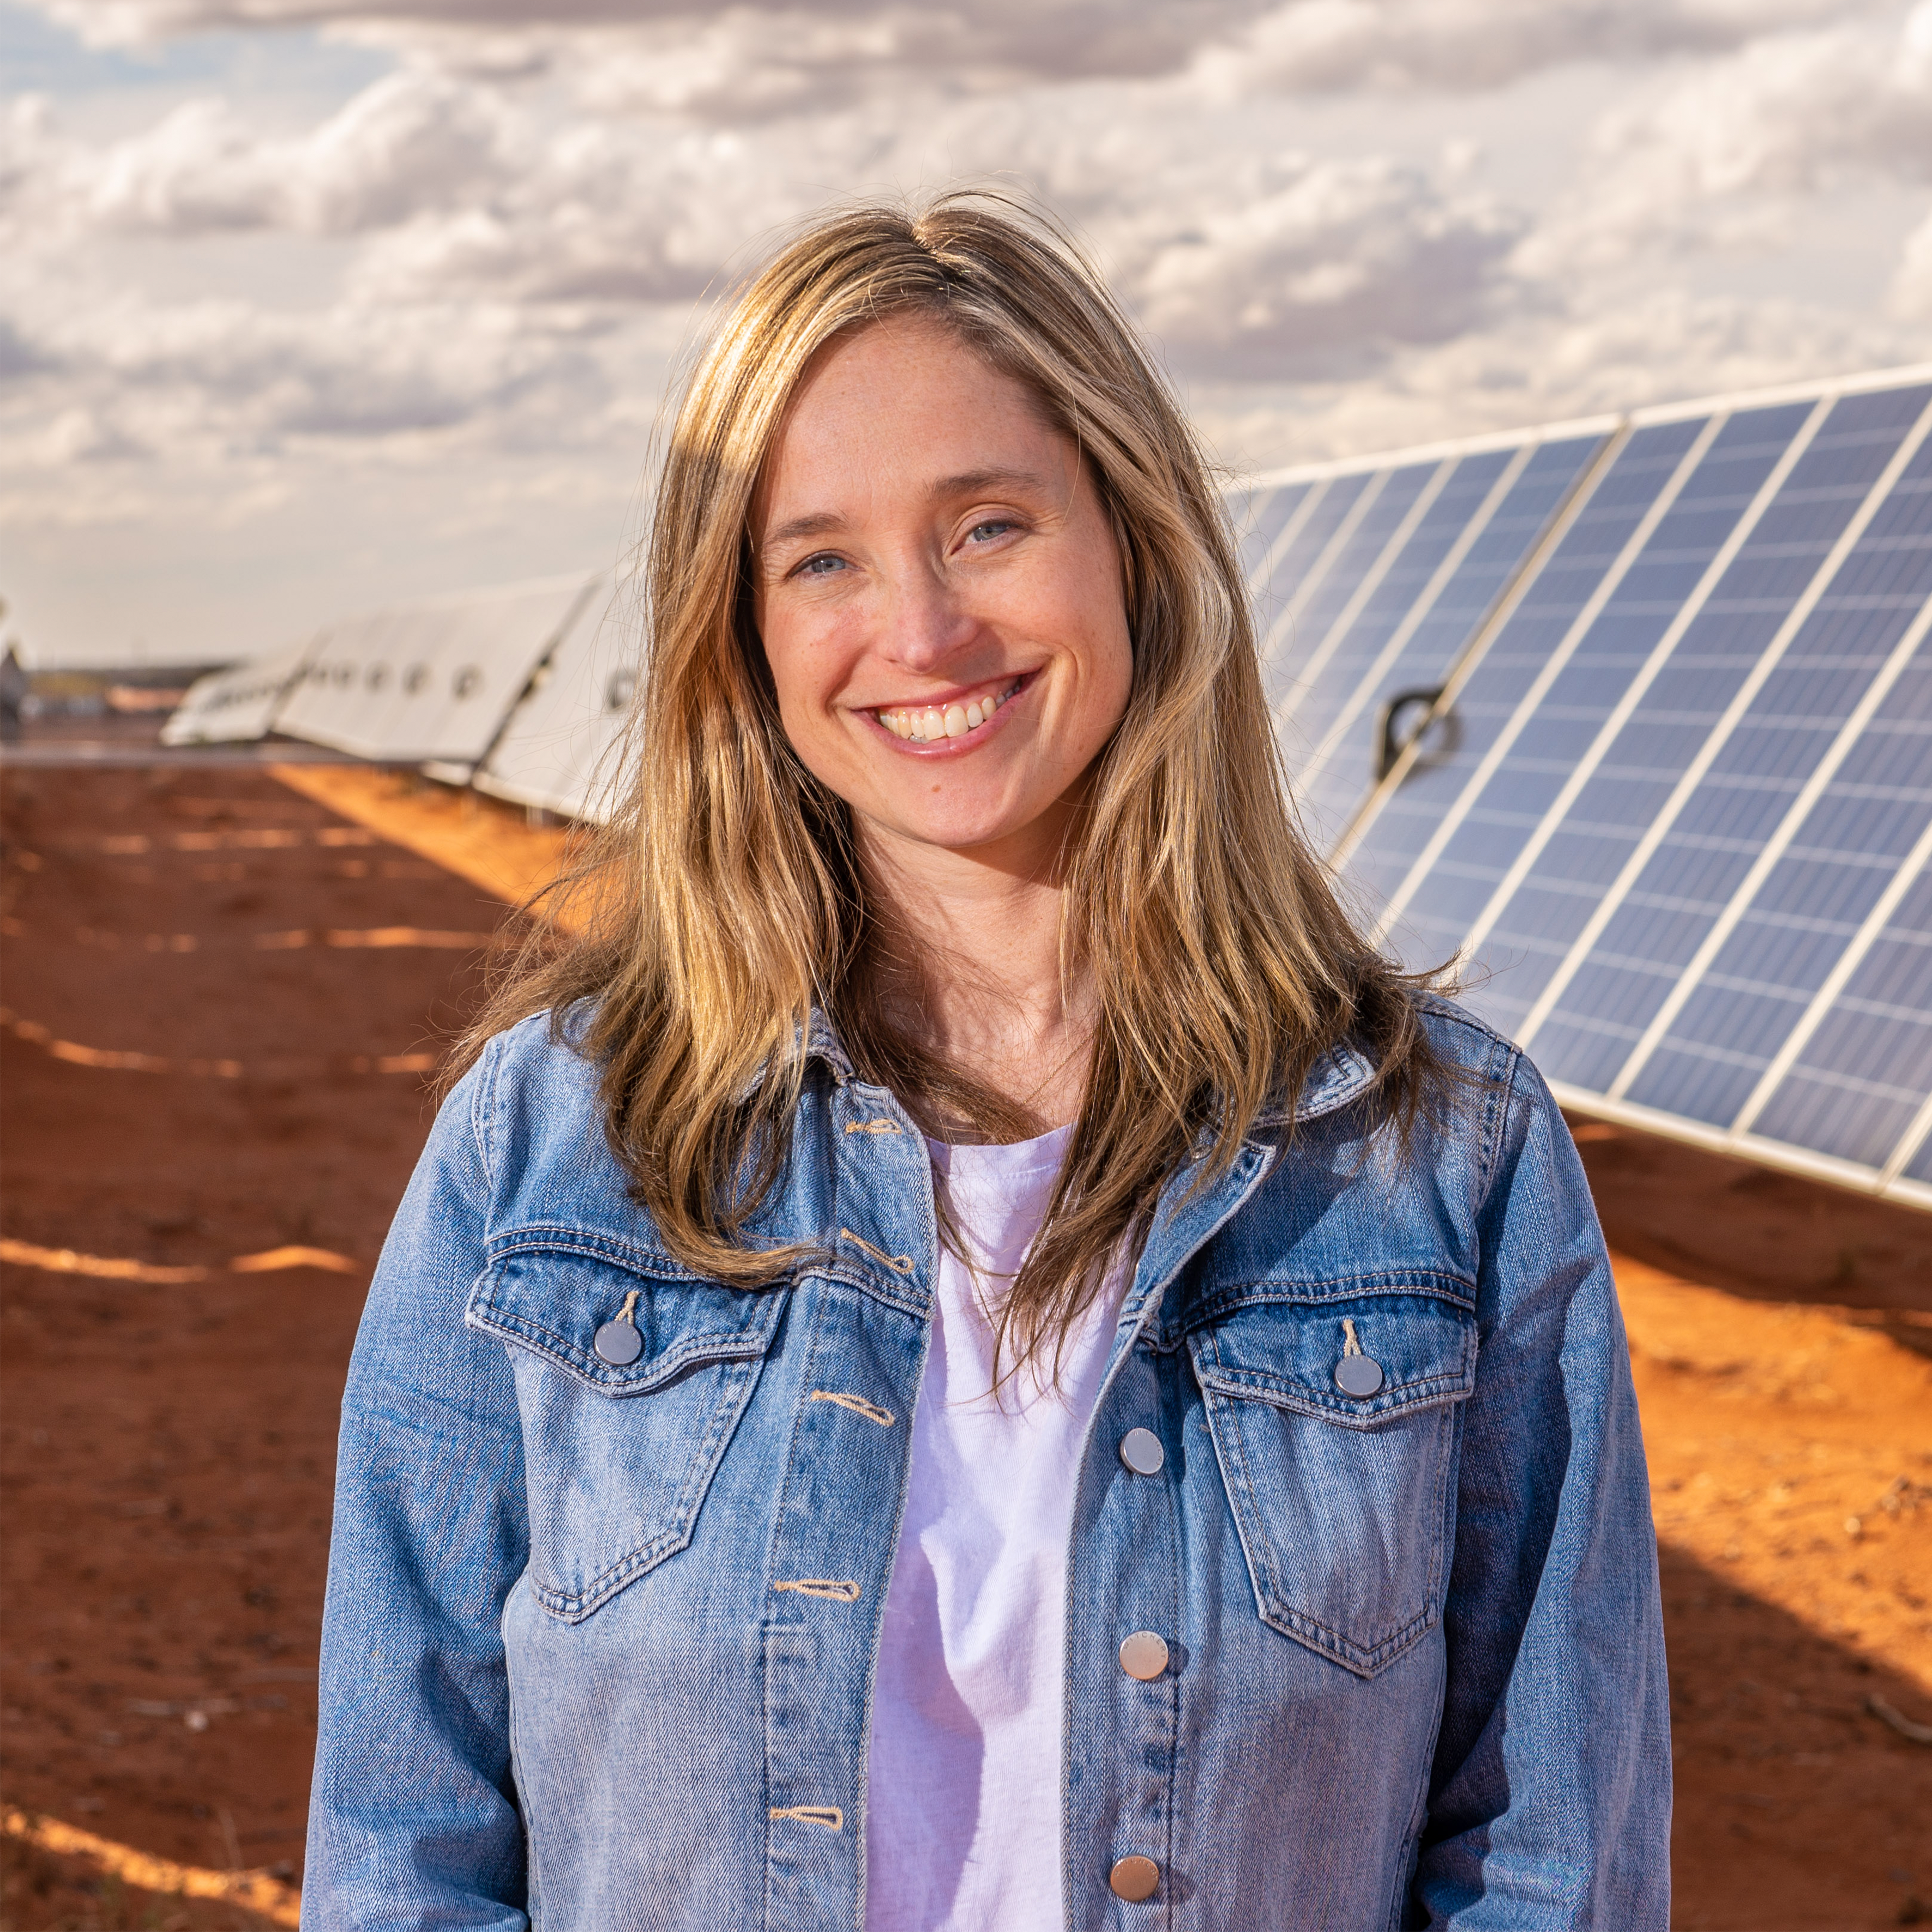 Amanda McKenzie posing in front of solar panels